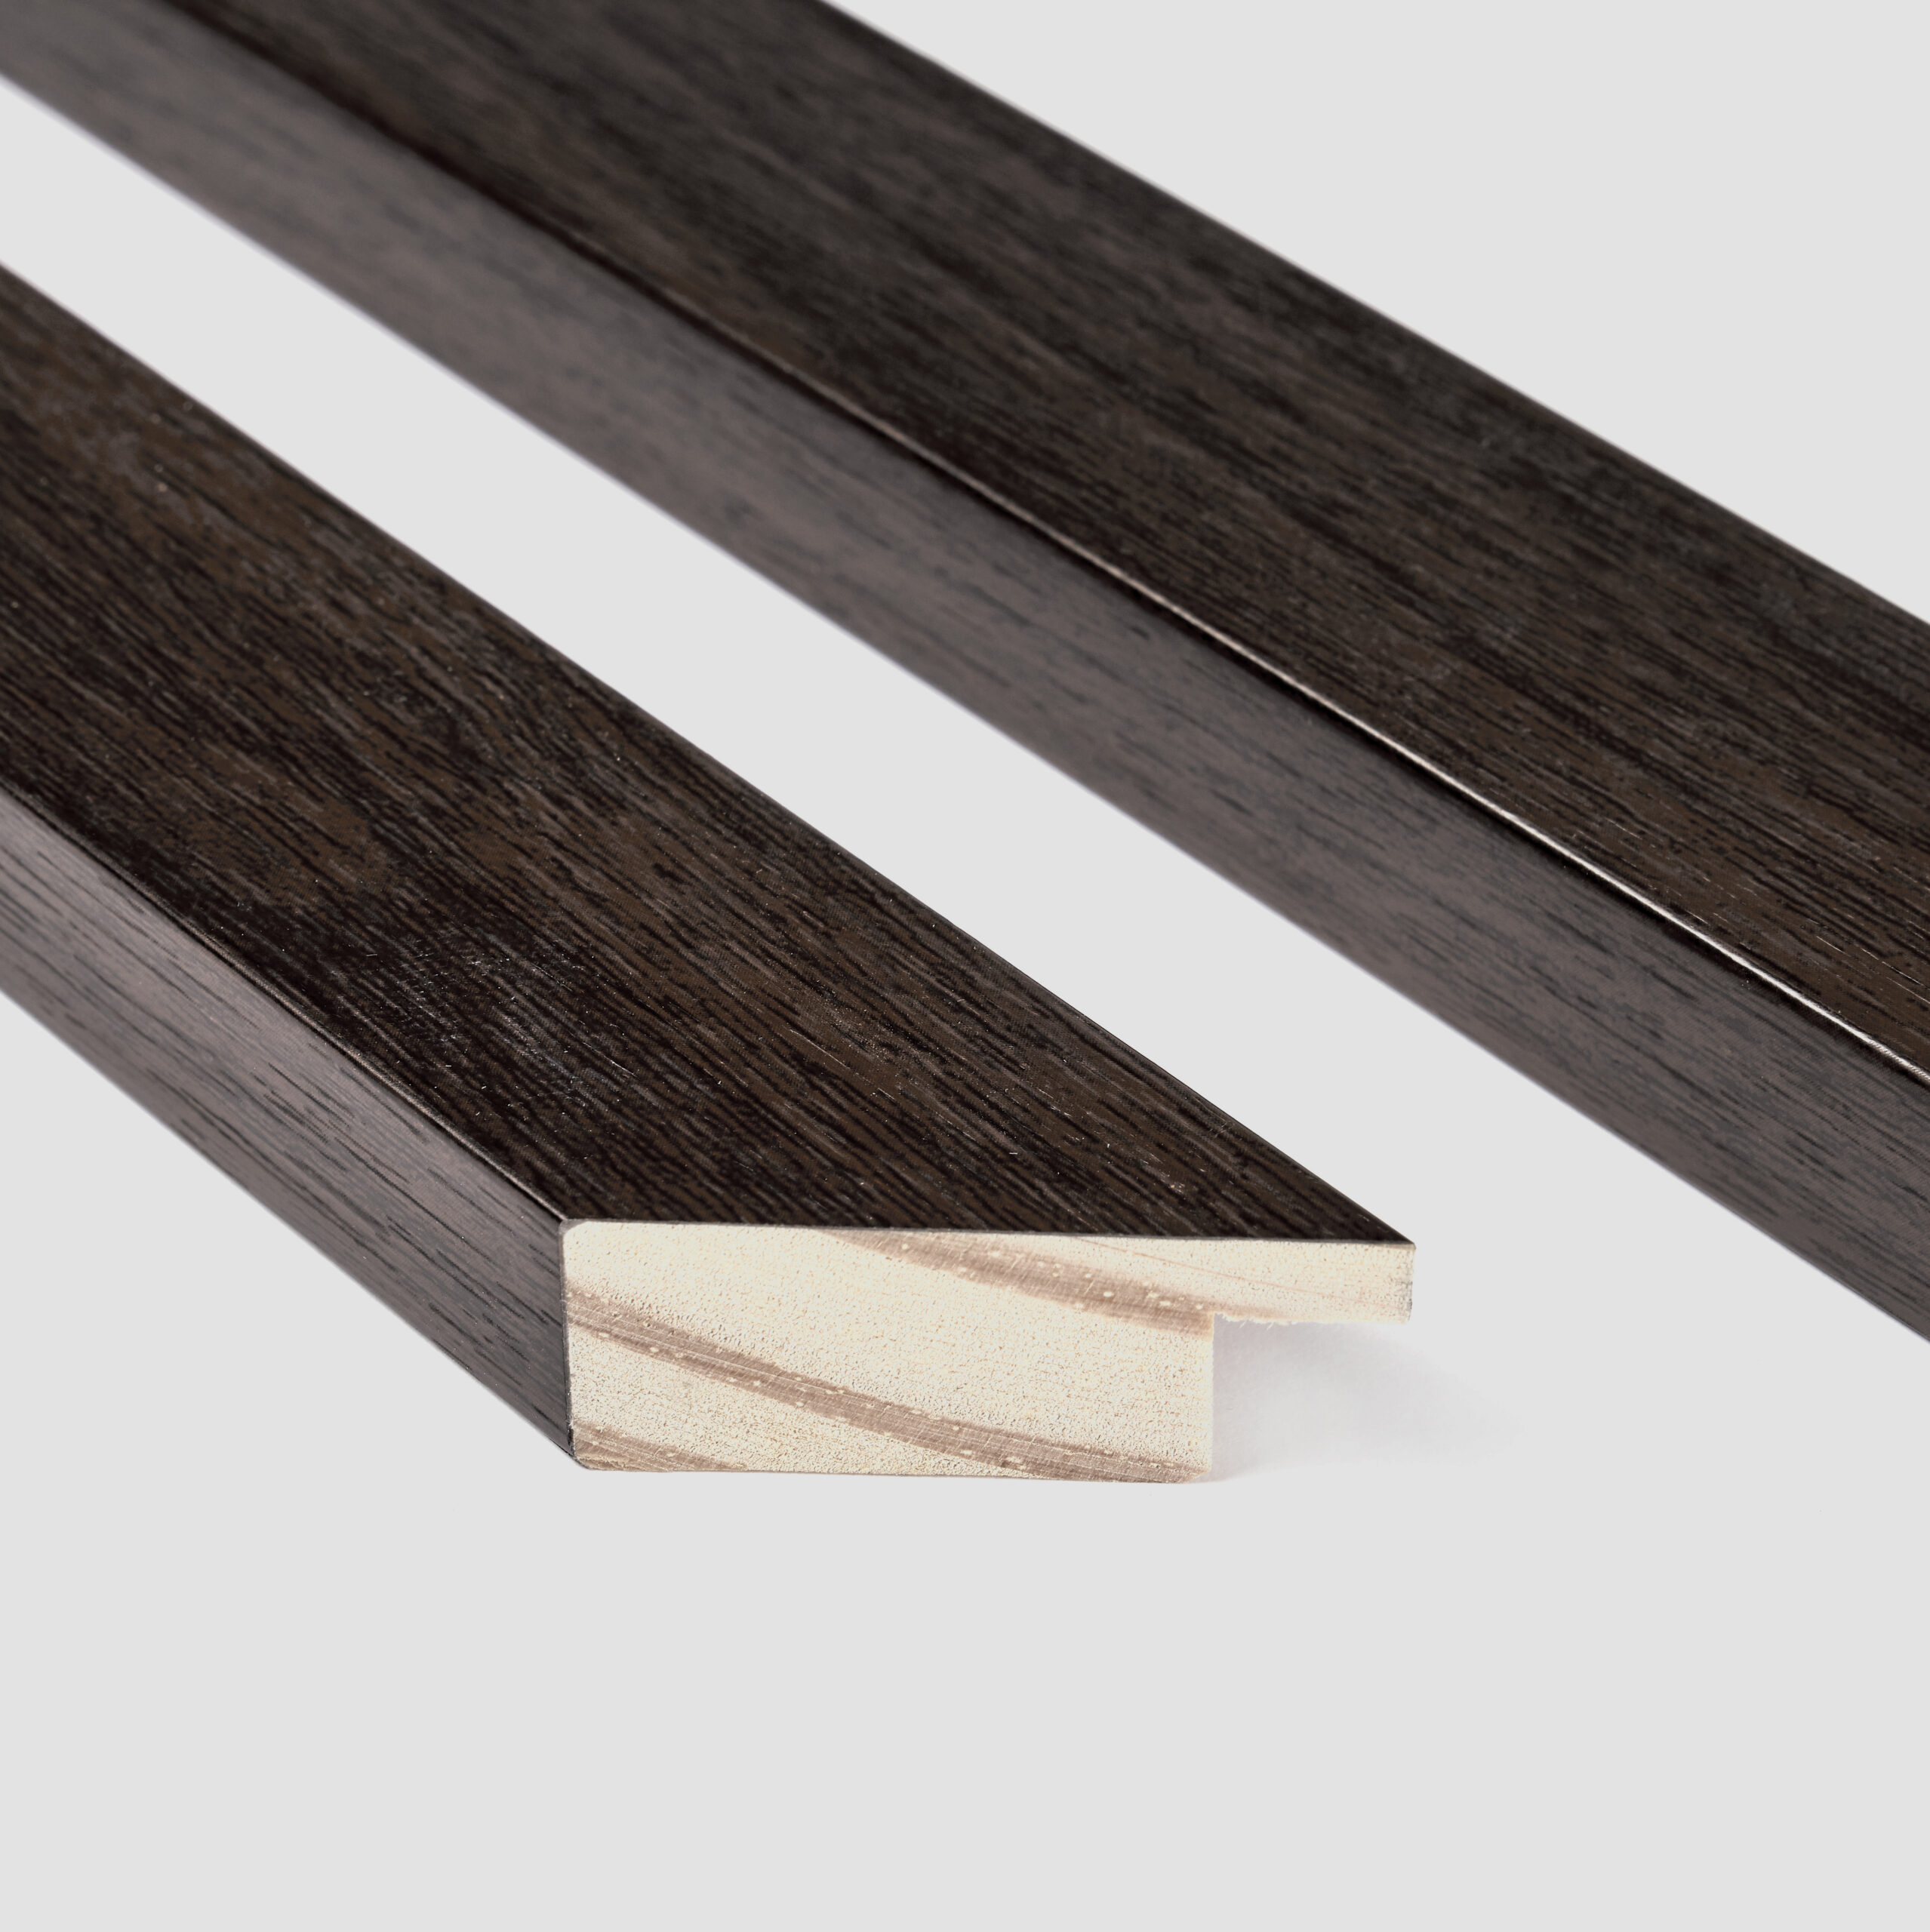 Moldura de madera clásica plana